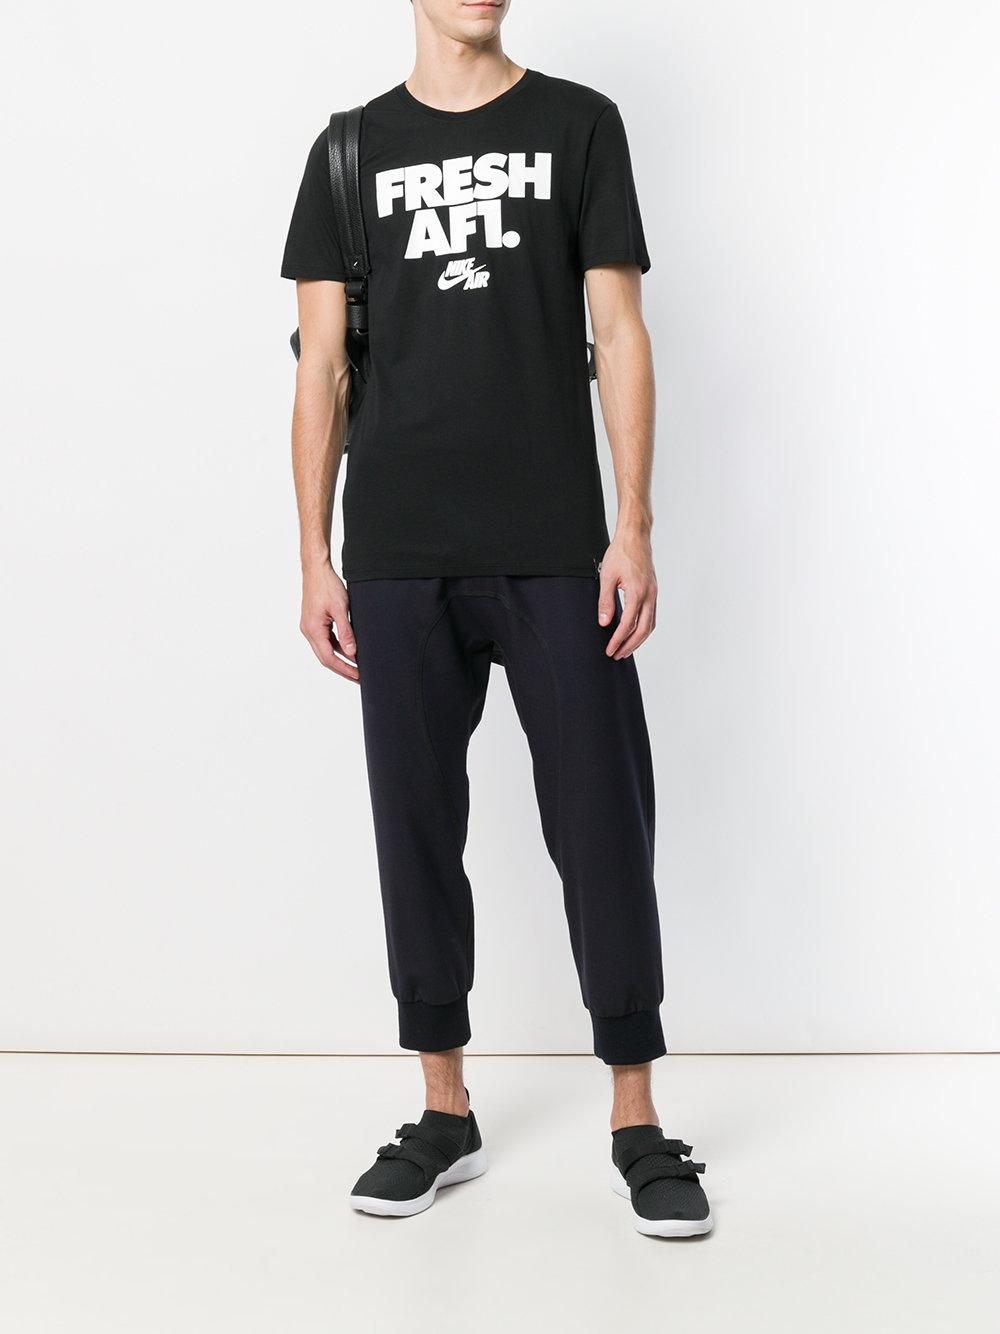 Nike Fresh Af1 T-shirt in Black for Men | Lyst